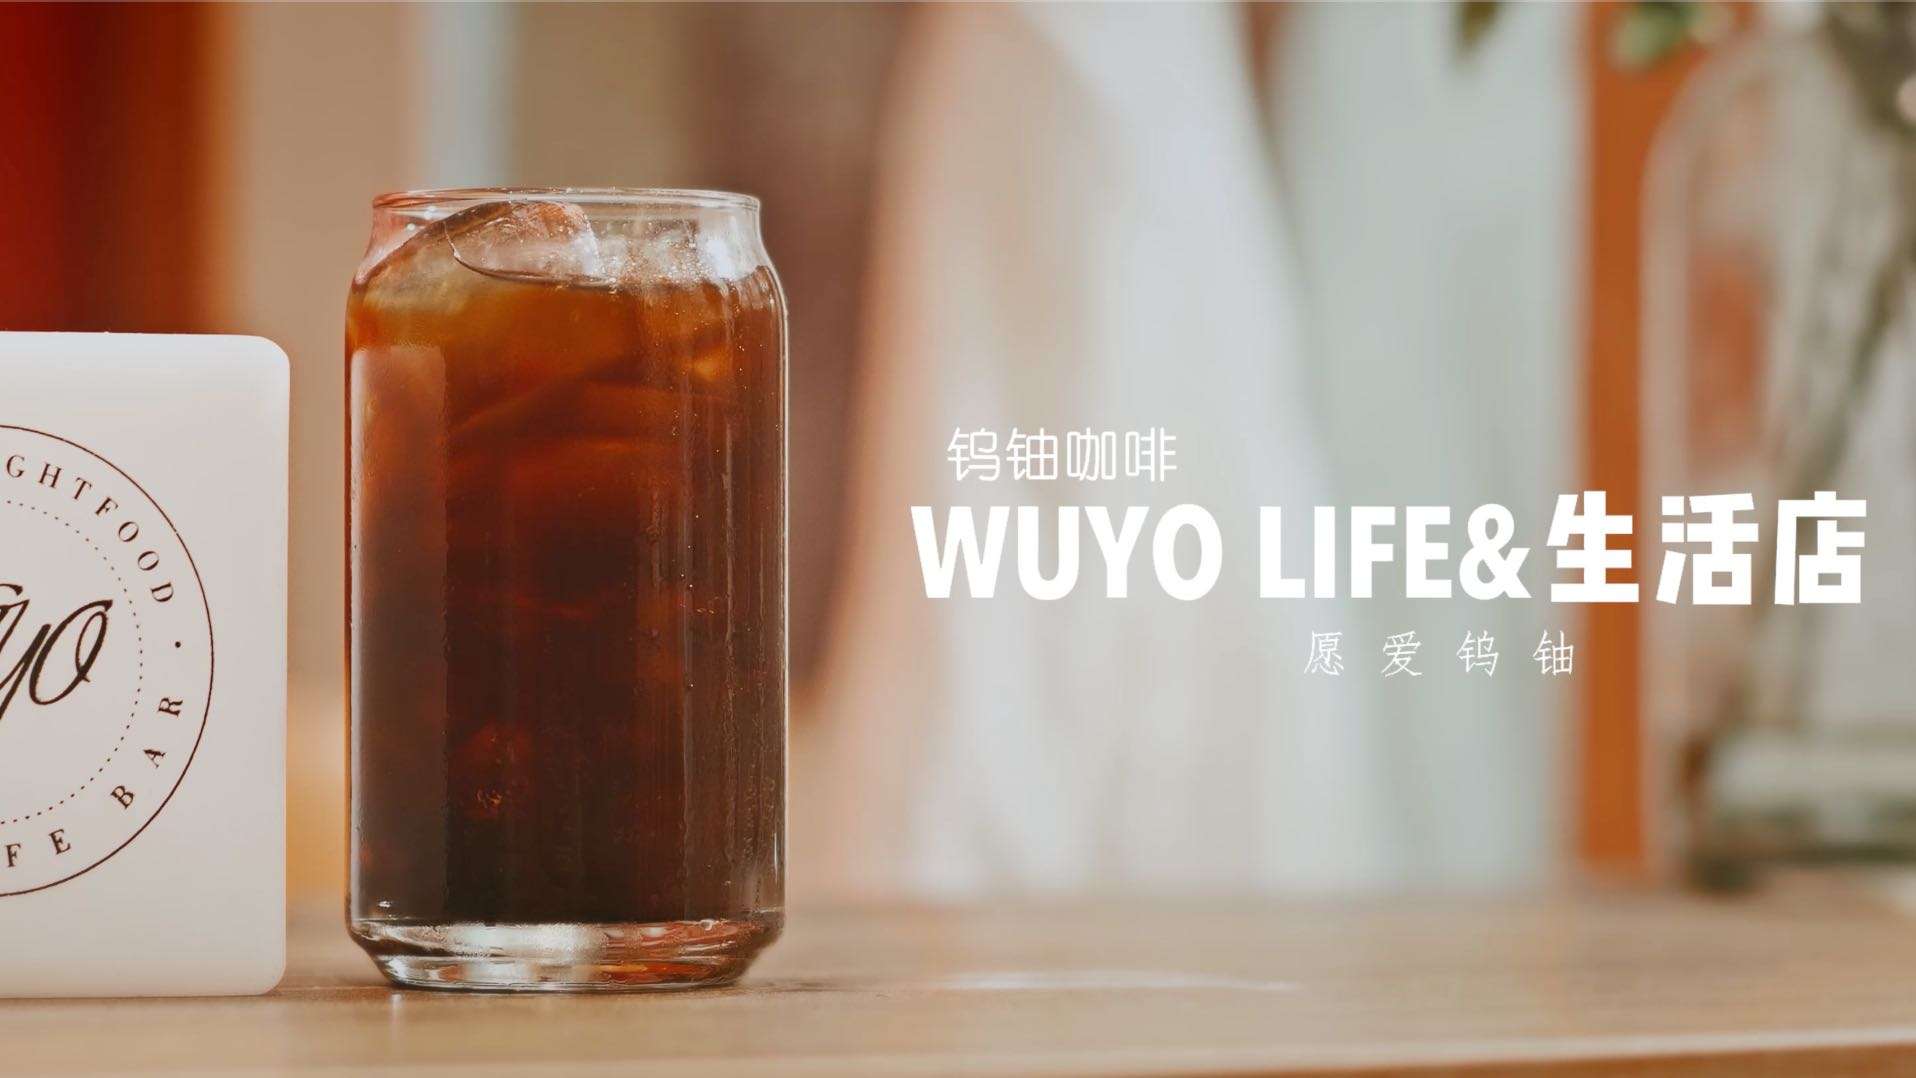 WUYO咖啡-生活与自然